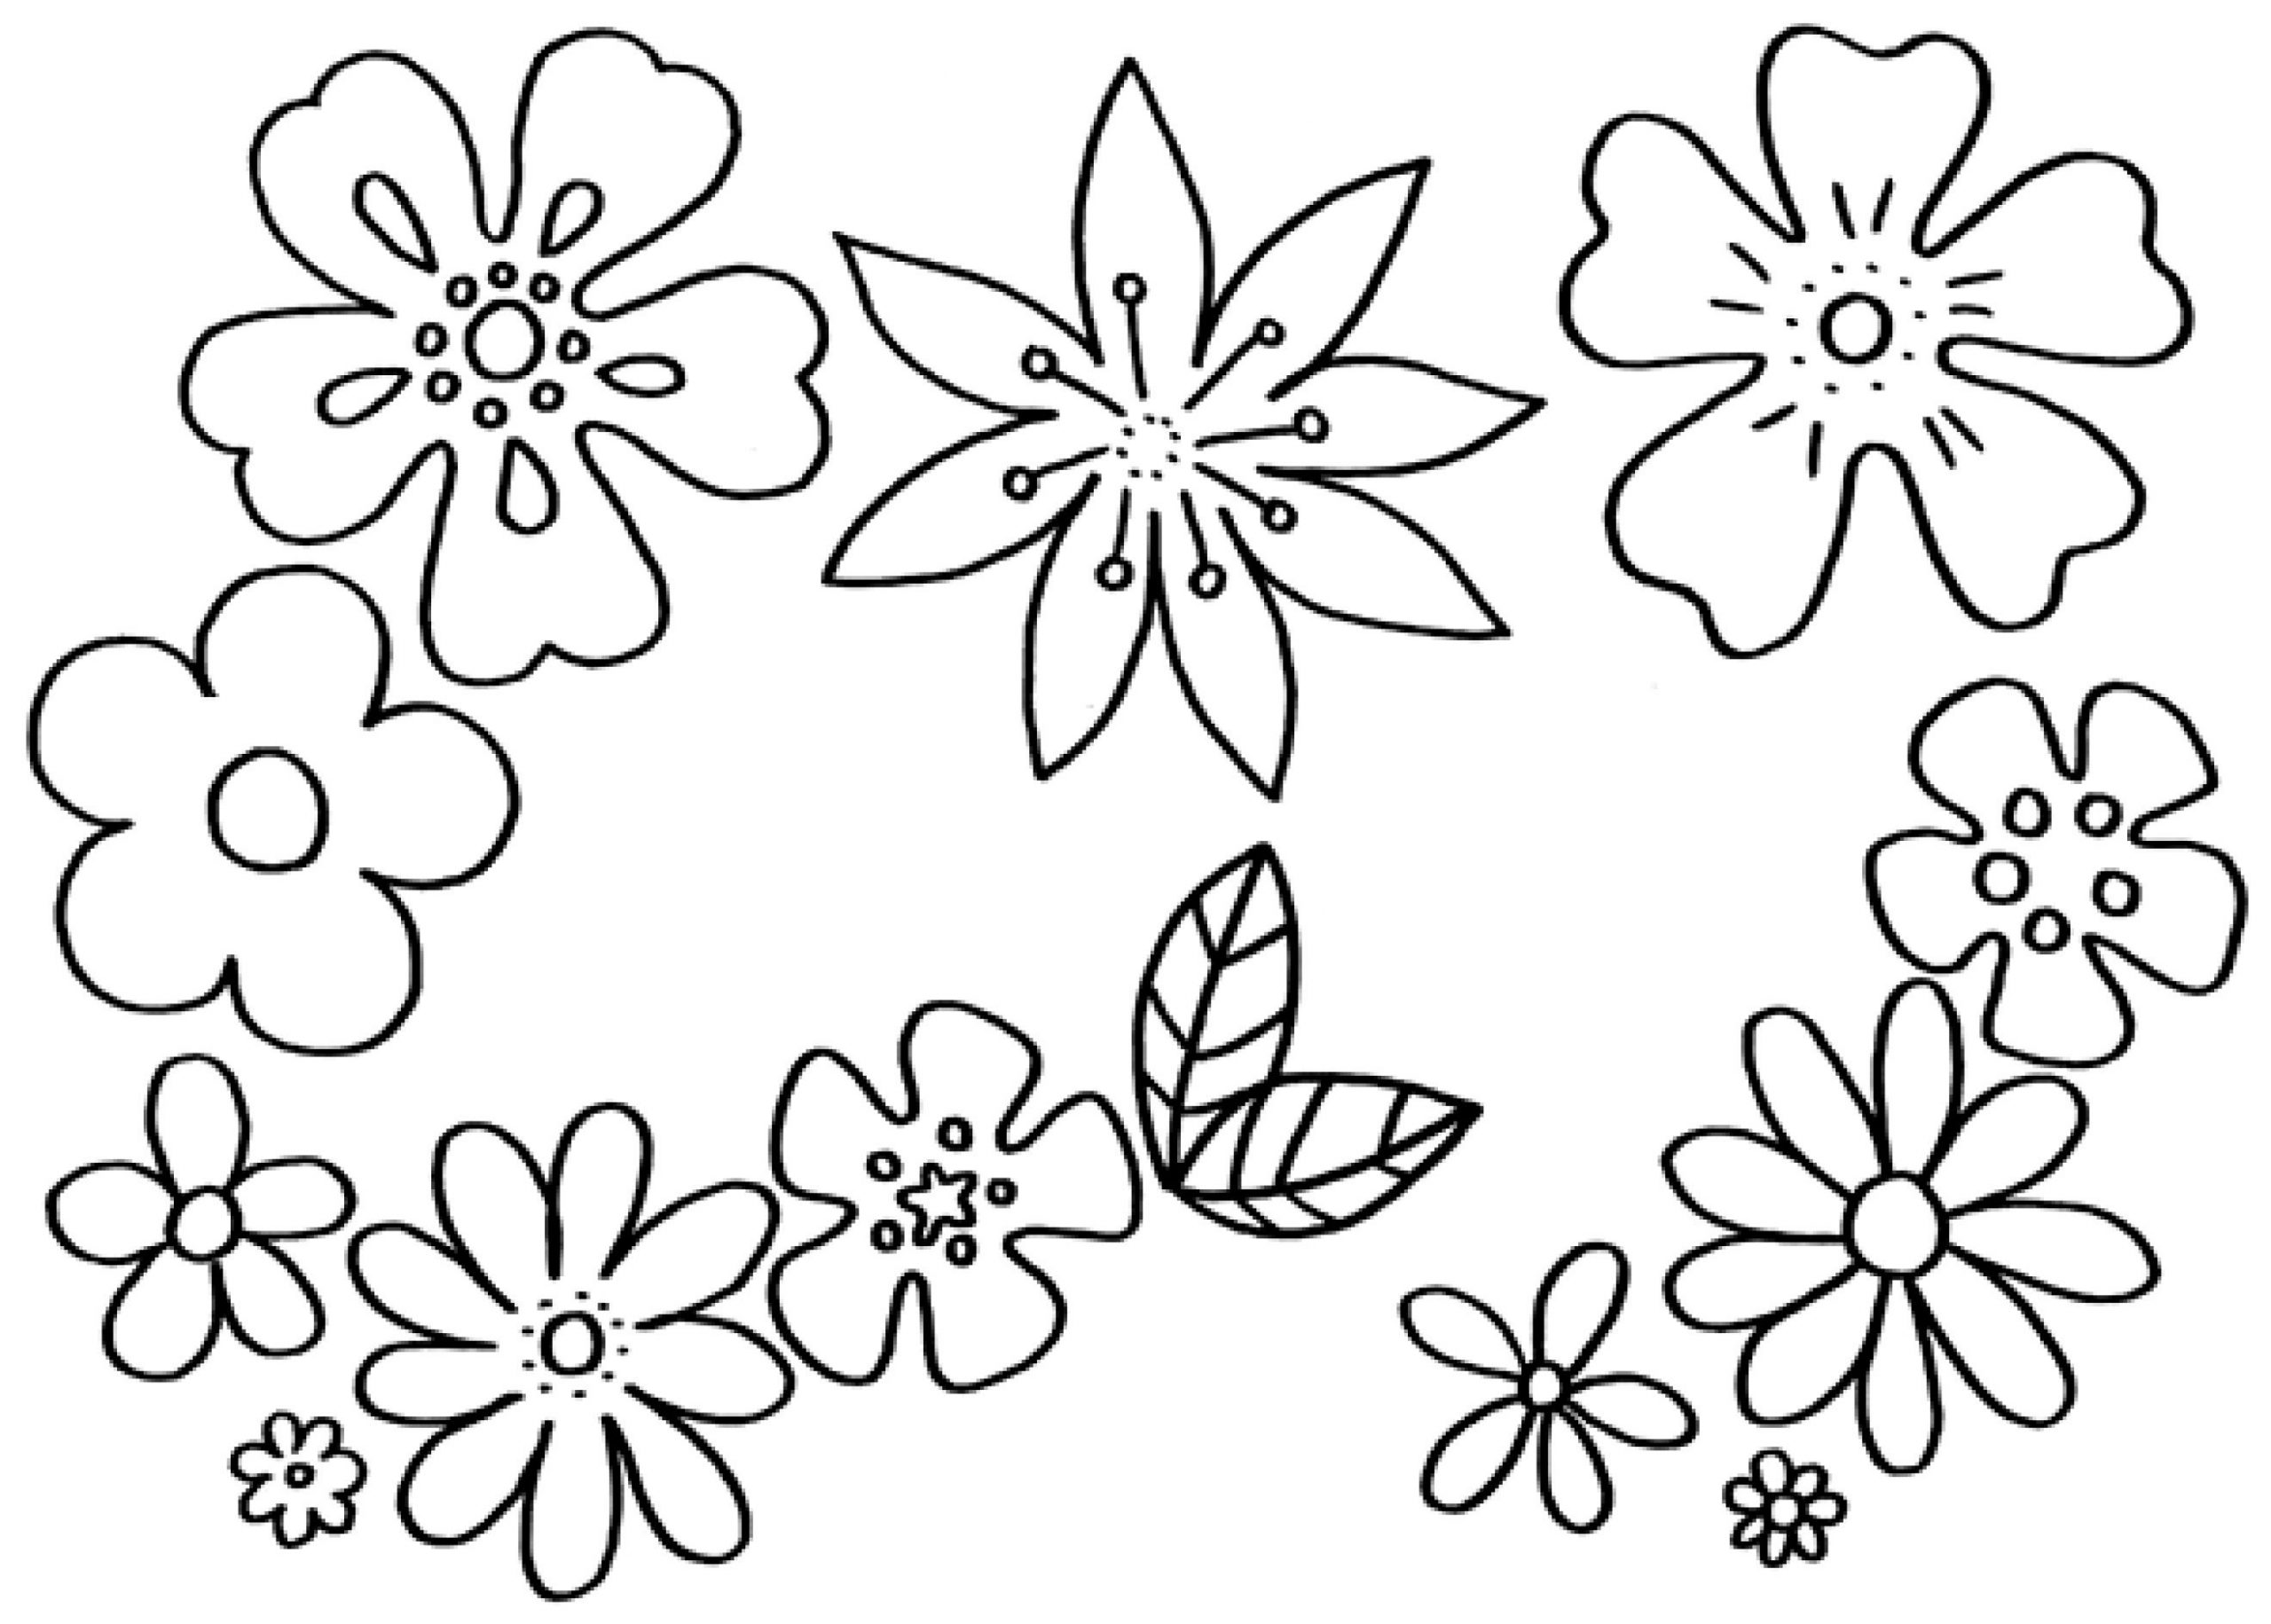 Malvorlagen Blumen - Kostenlose Ausmalbilder | Mytoys Blog bestimmt für Malvorlage Blume